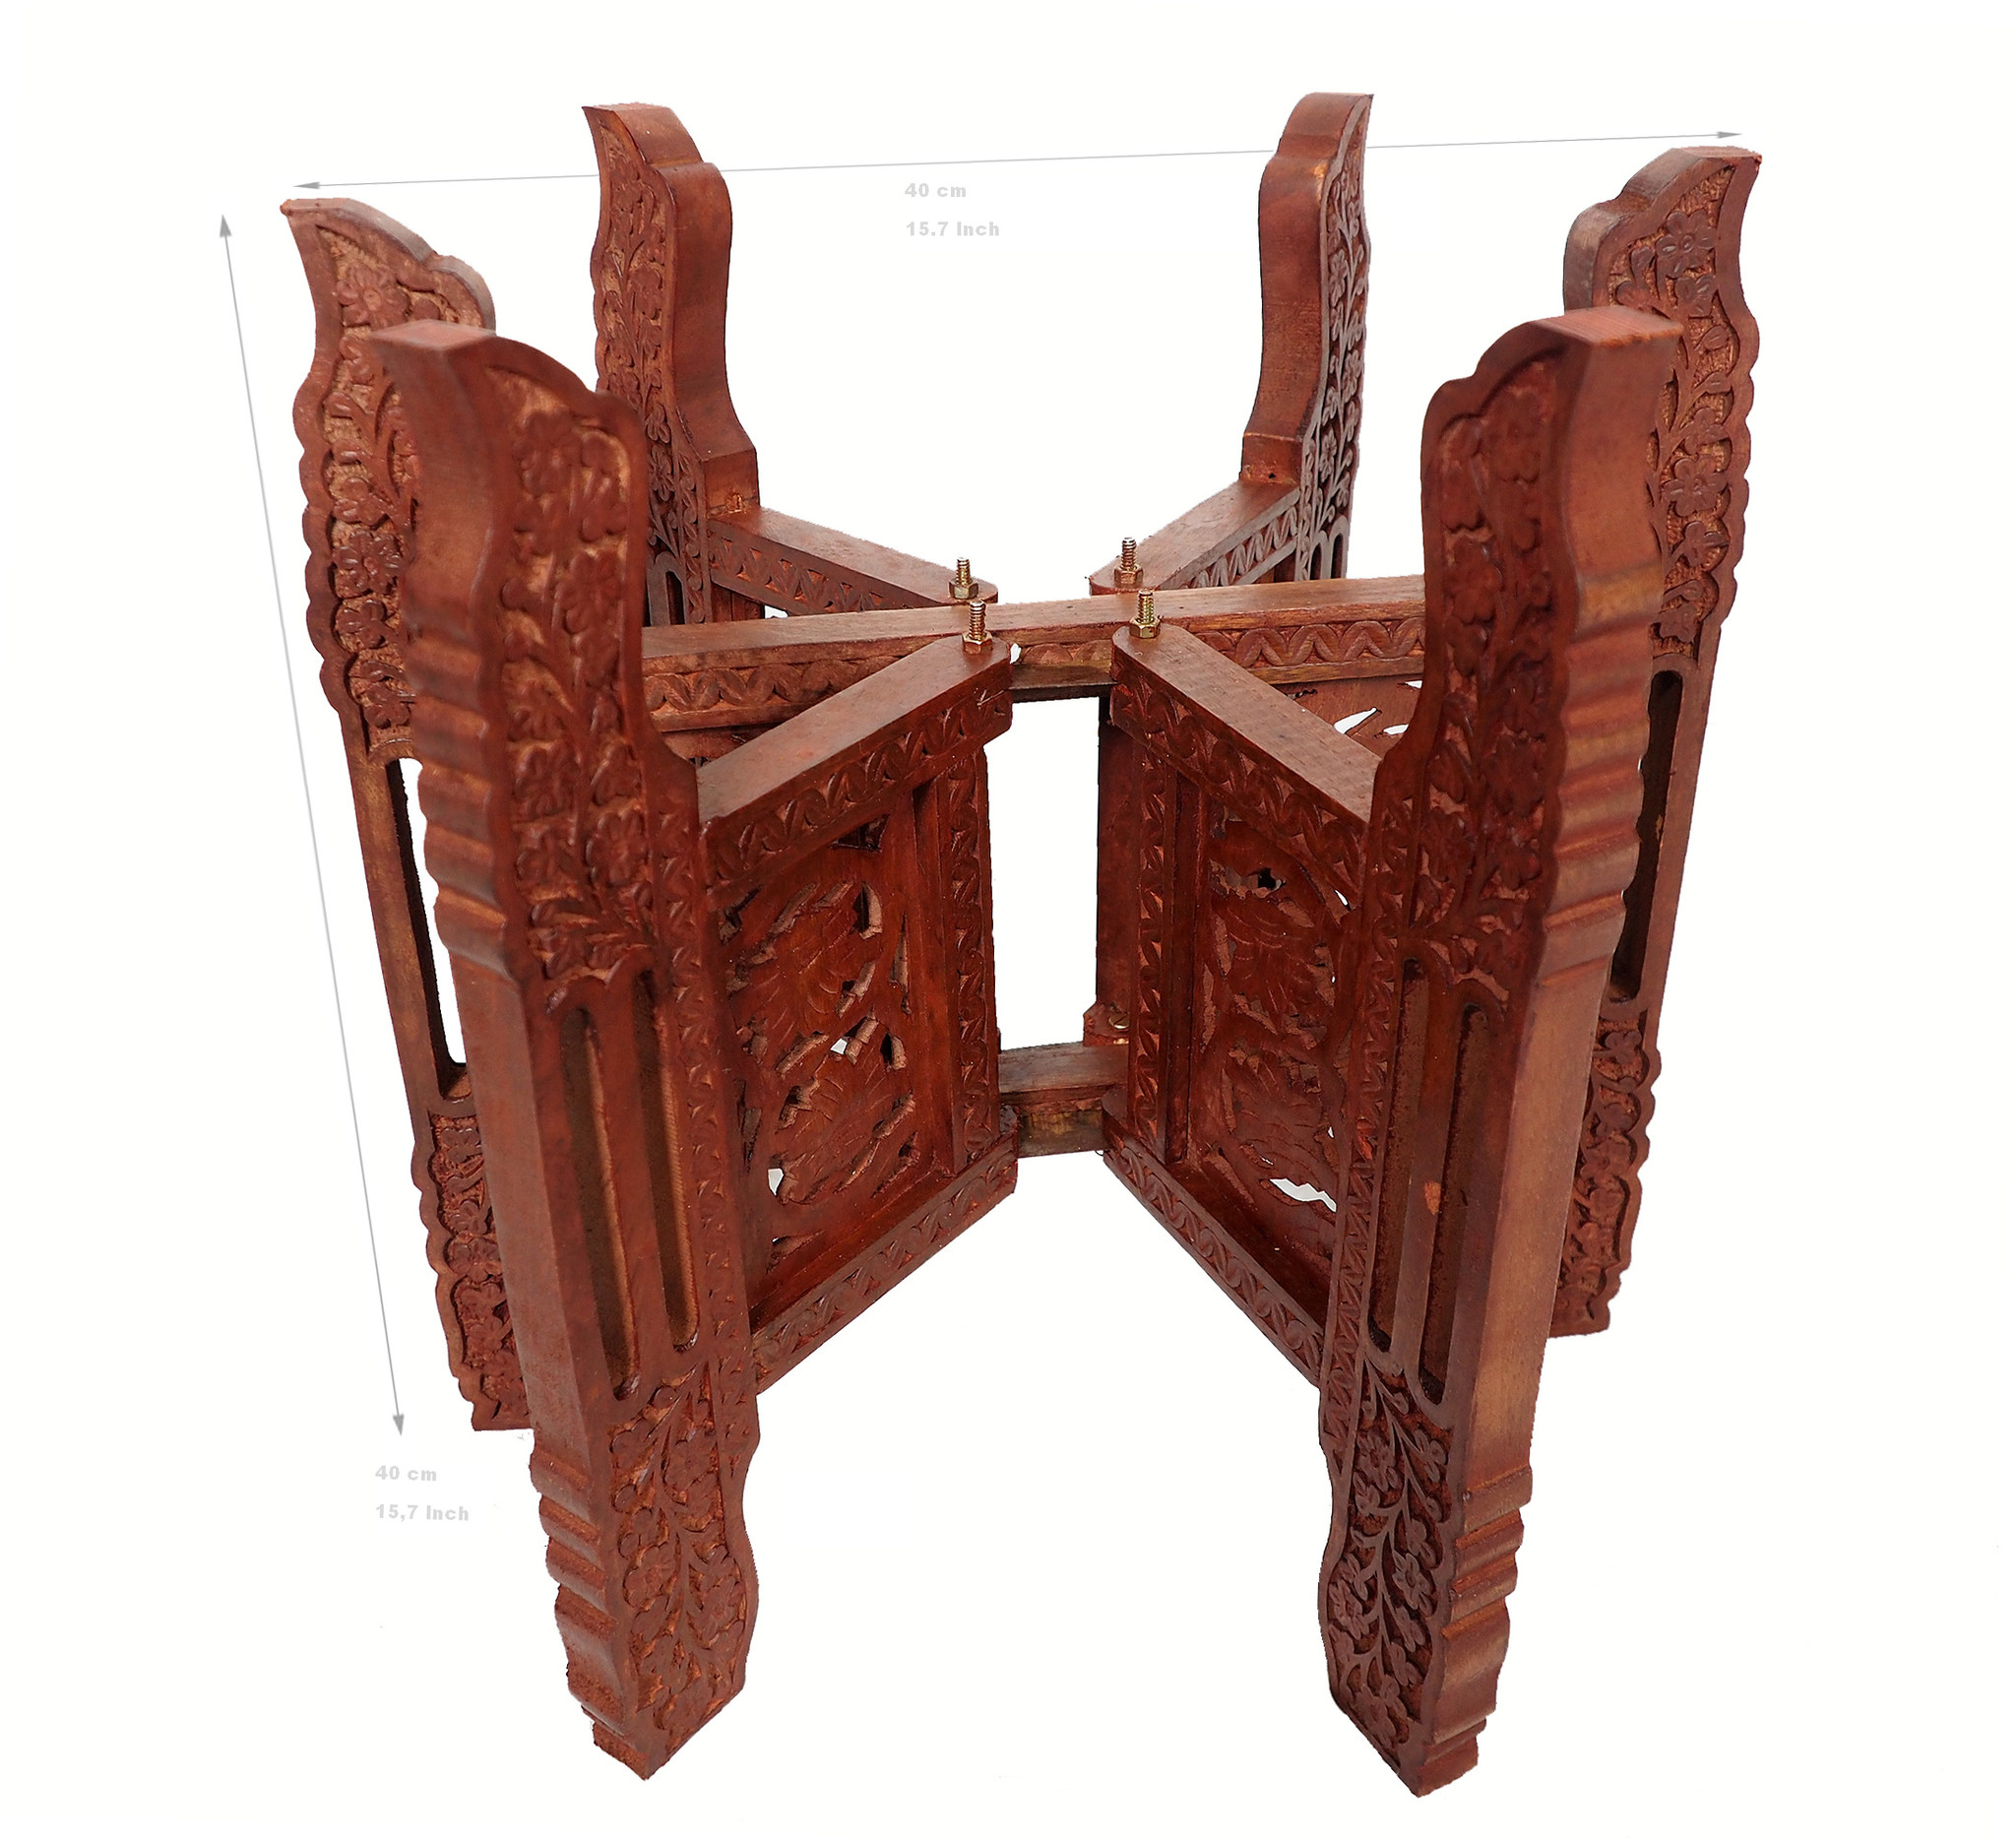 Tischgestell Teetisch zusammenklappbare tisch stand tablett gestell Holzgestell in 6 Größen Auswählbar 40 cm 50 cm 60 cm 70 cm 80 cm 90 cm